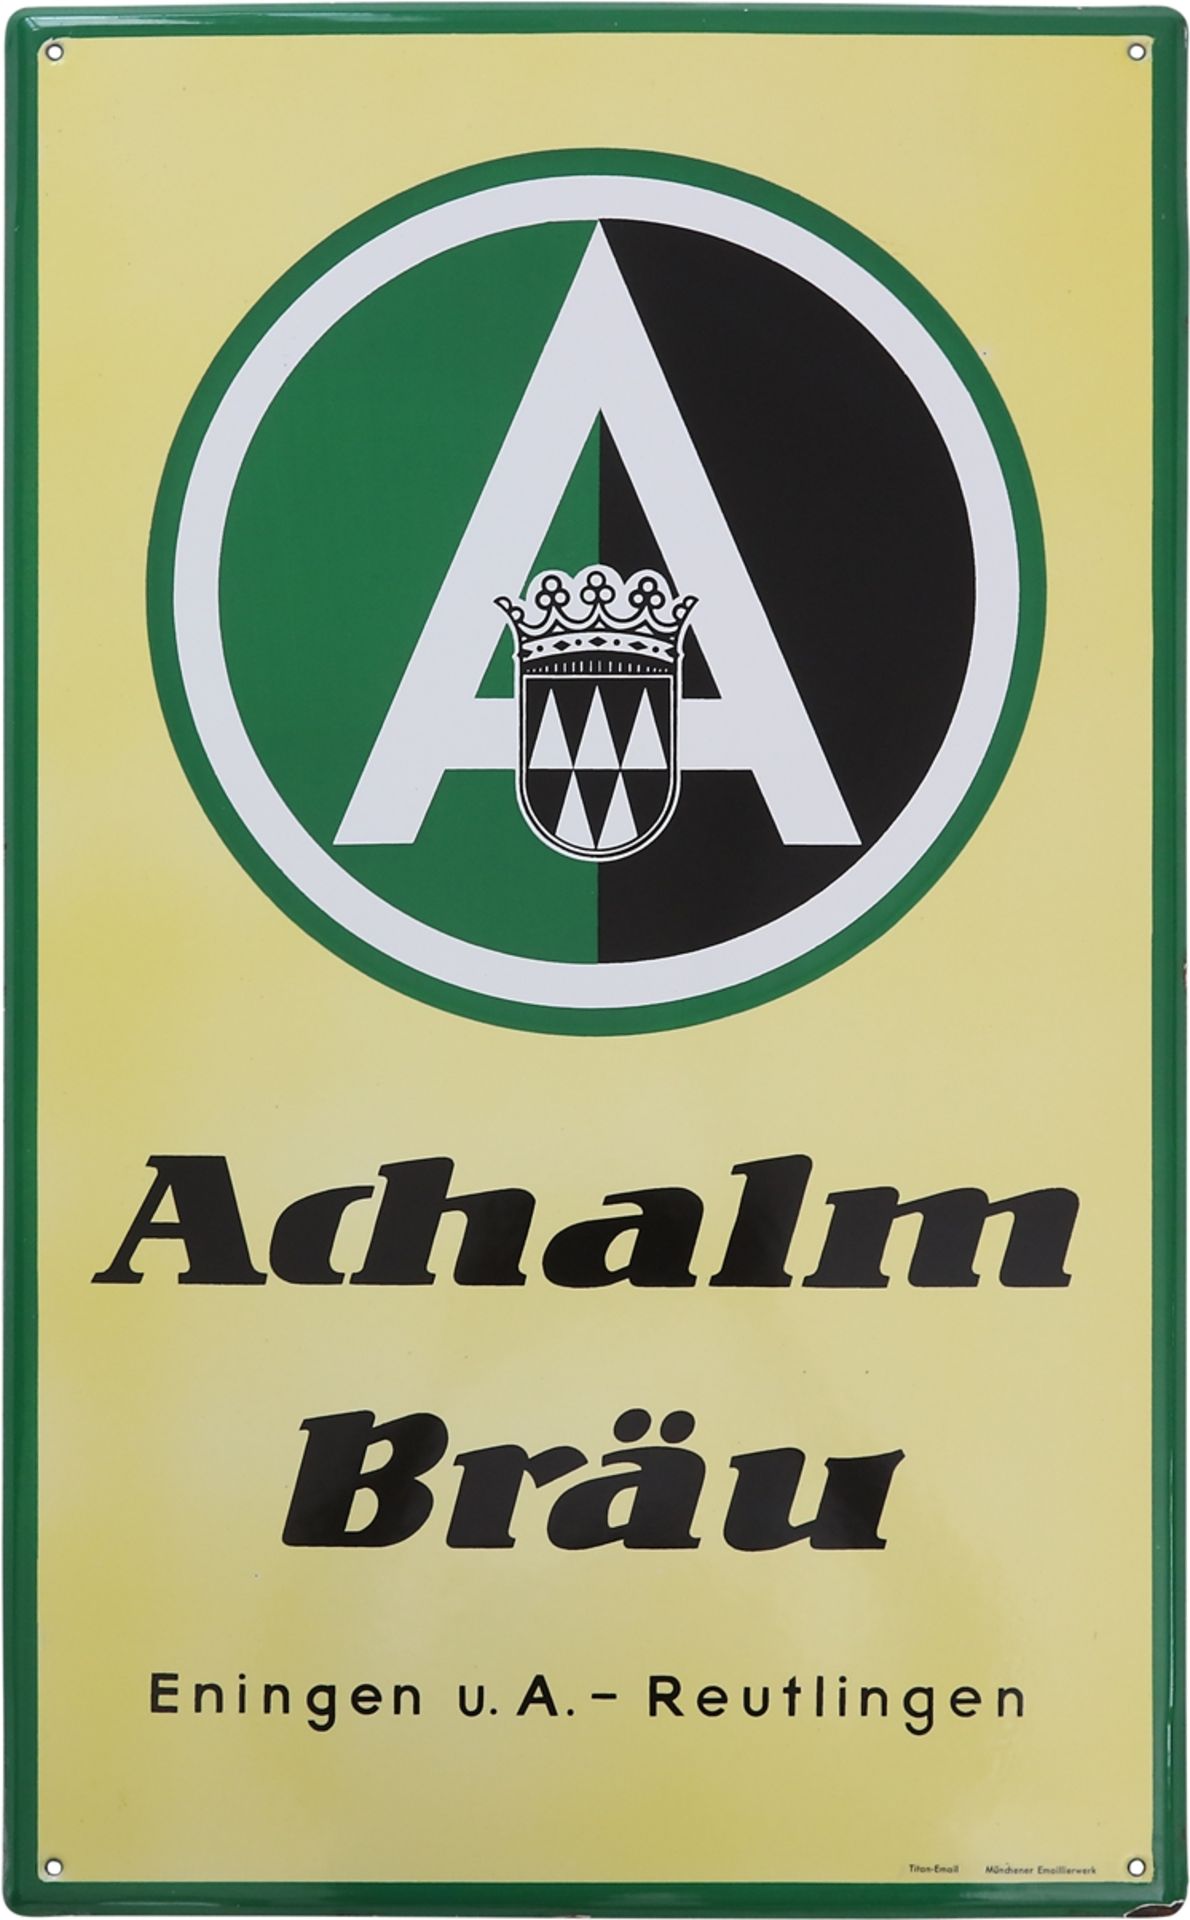 Enamel sign Achalm Bräu, Eningen u.A. - Reutlingen, around 1950